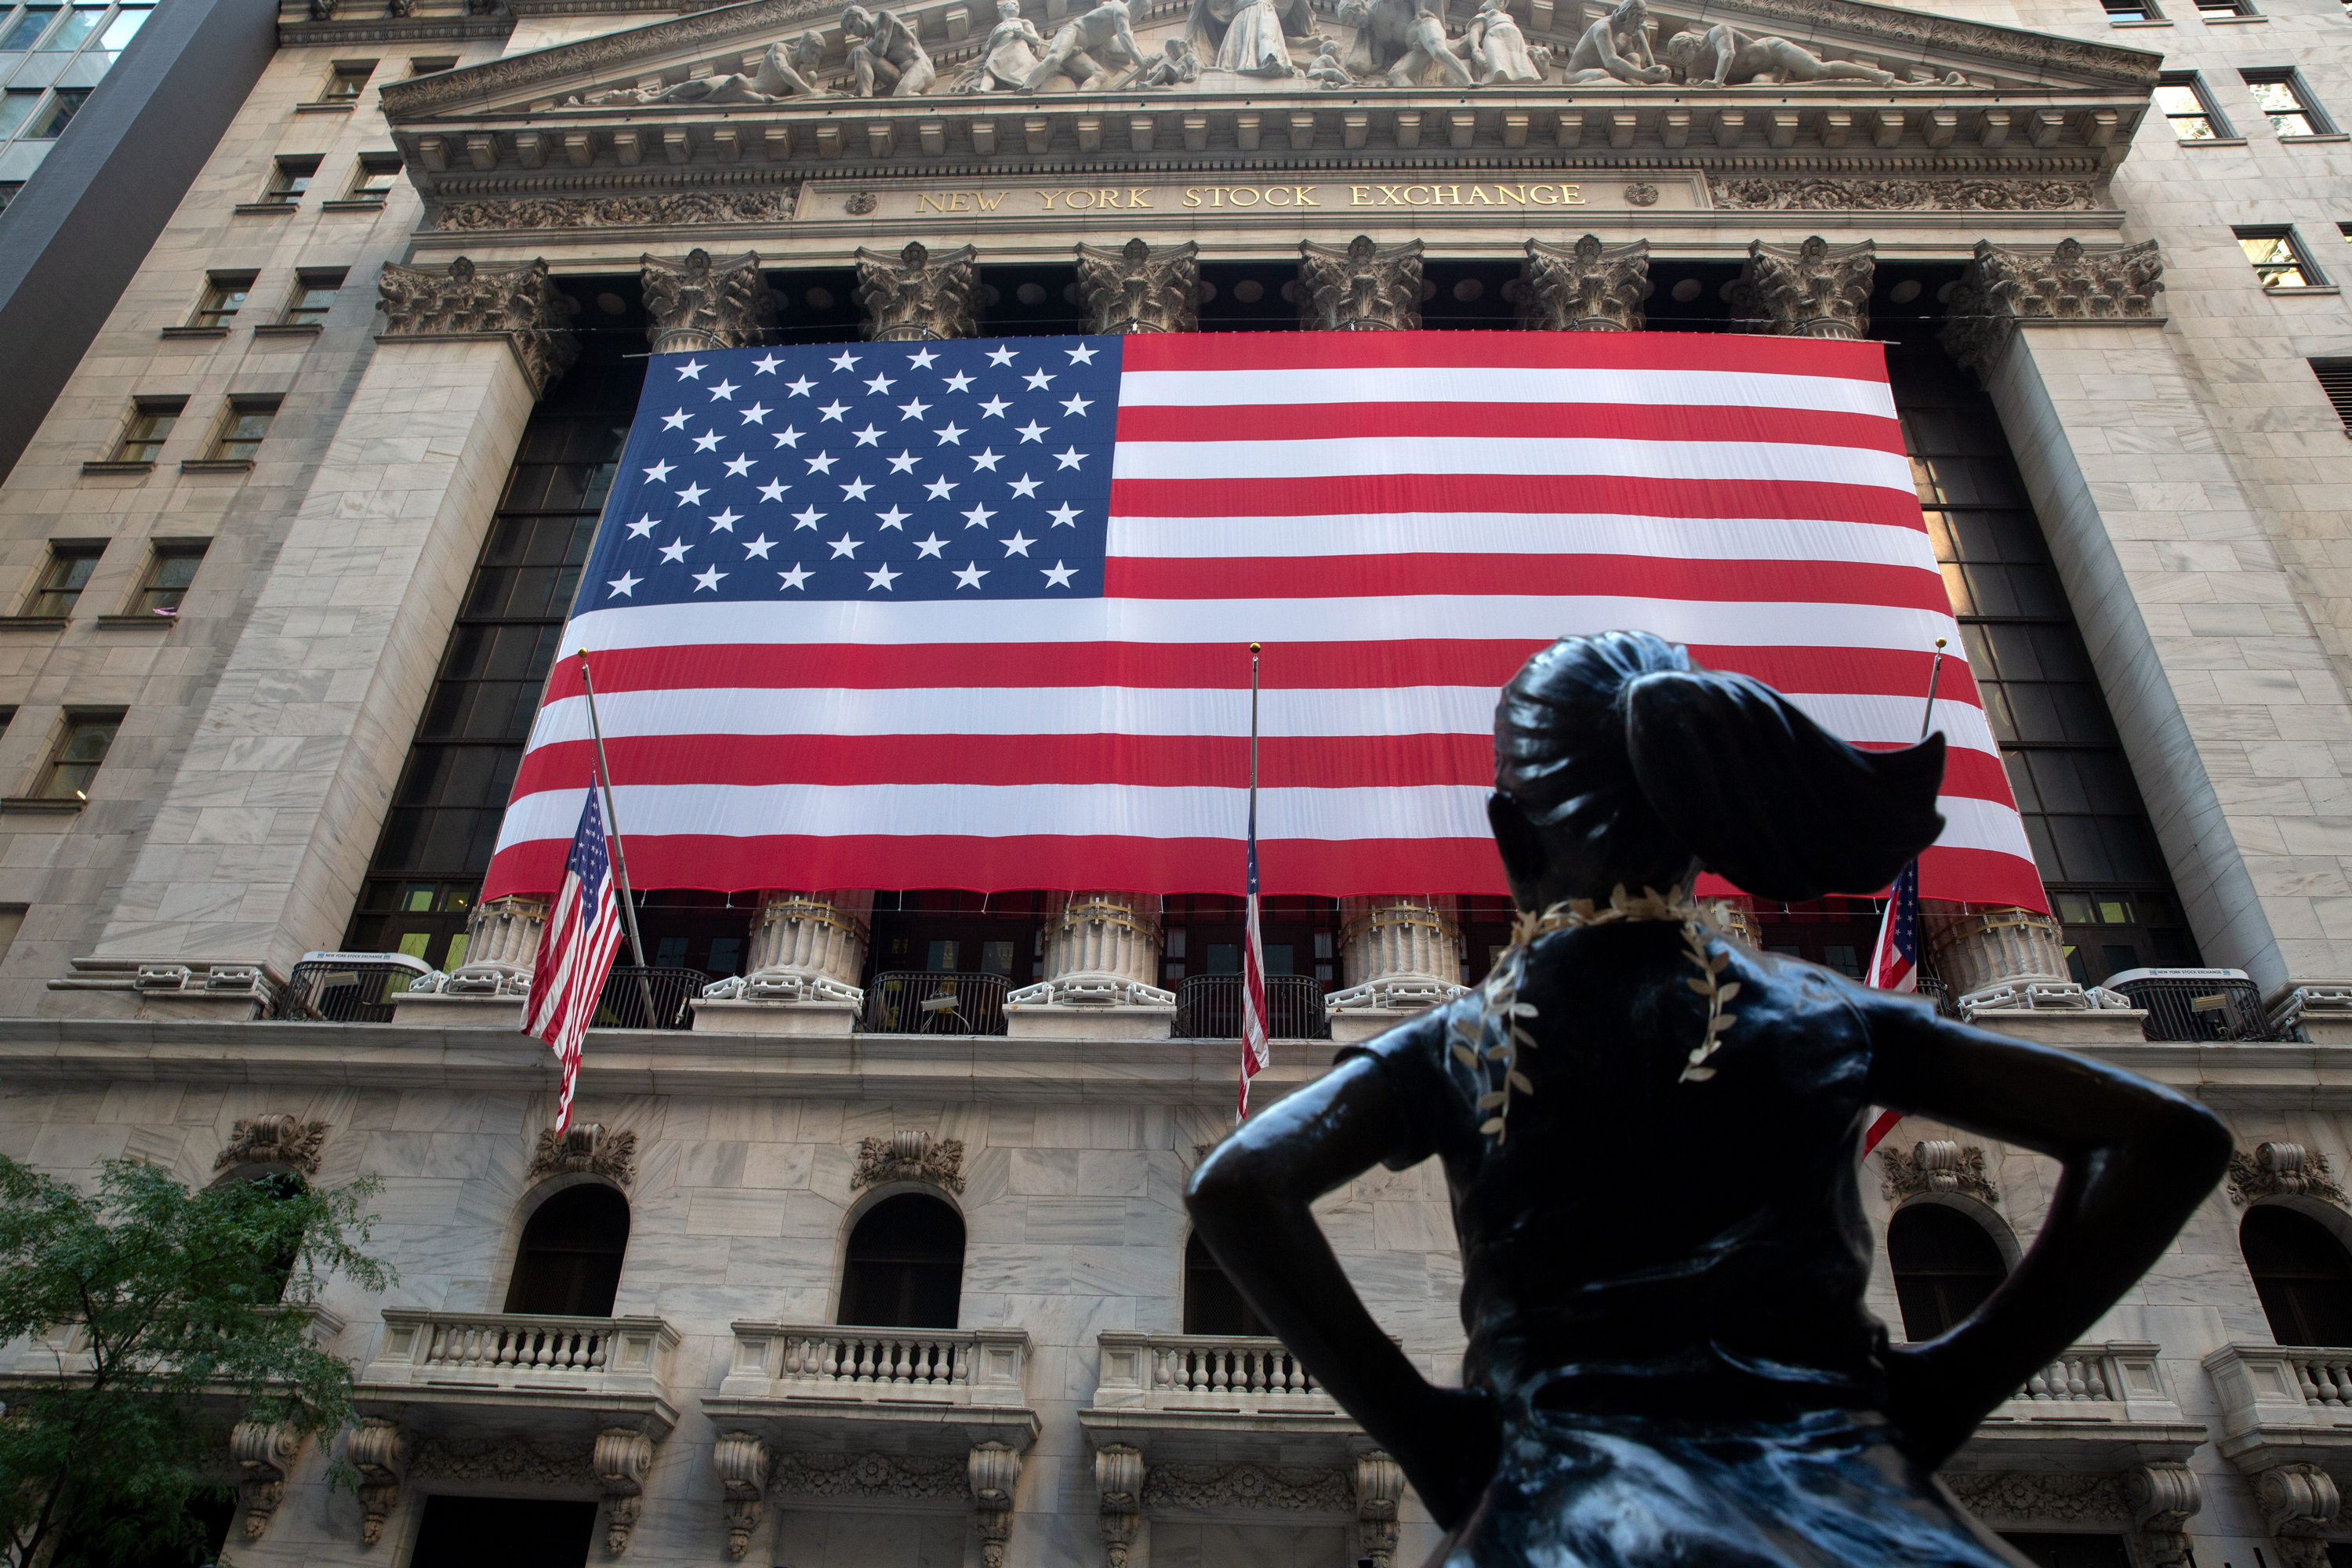 The New York Stock Exchange, Sept. 21, 2020.